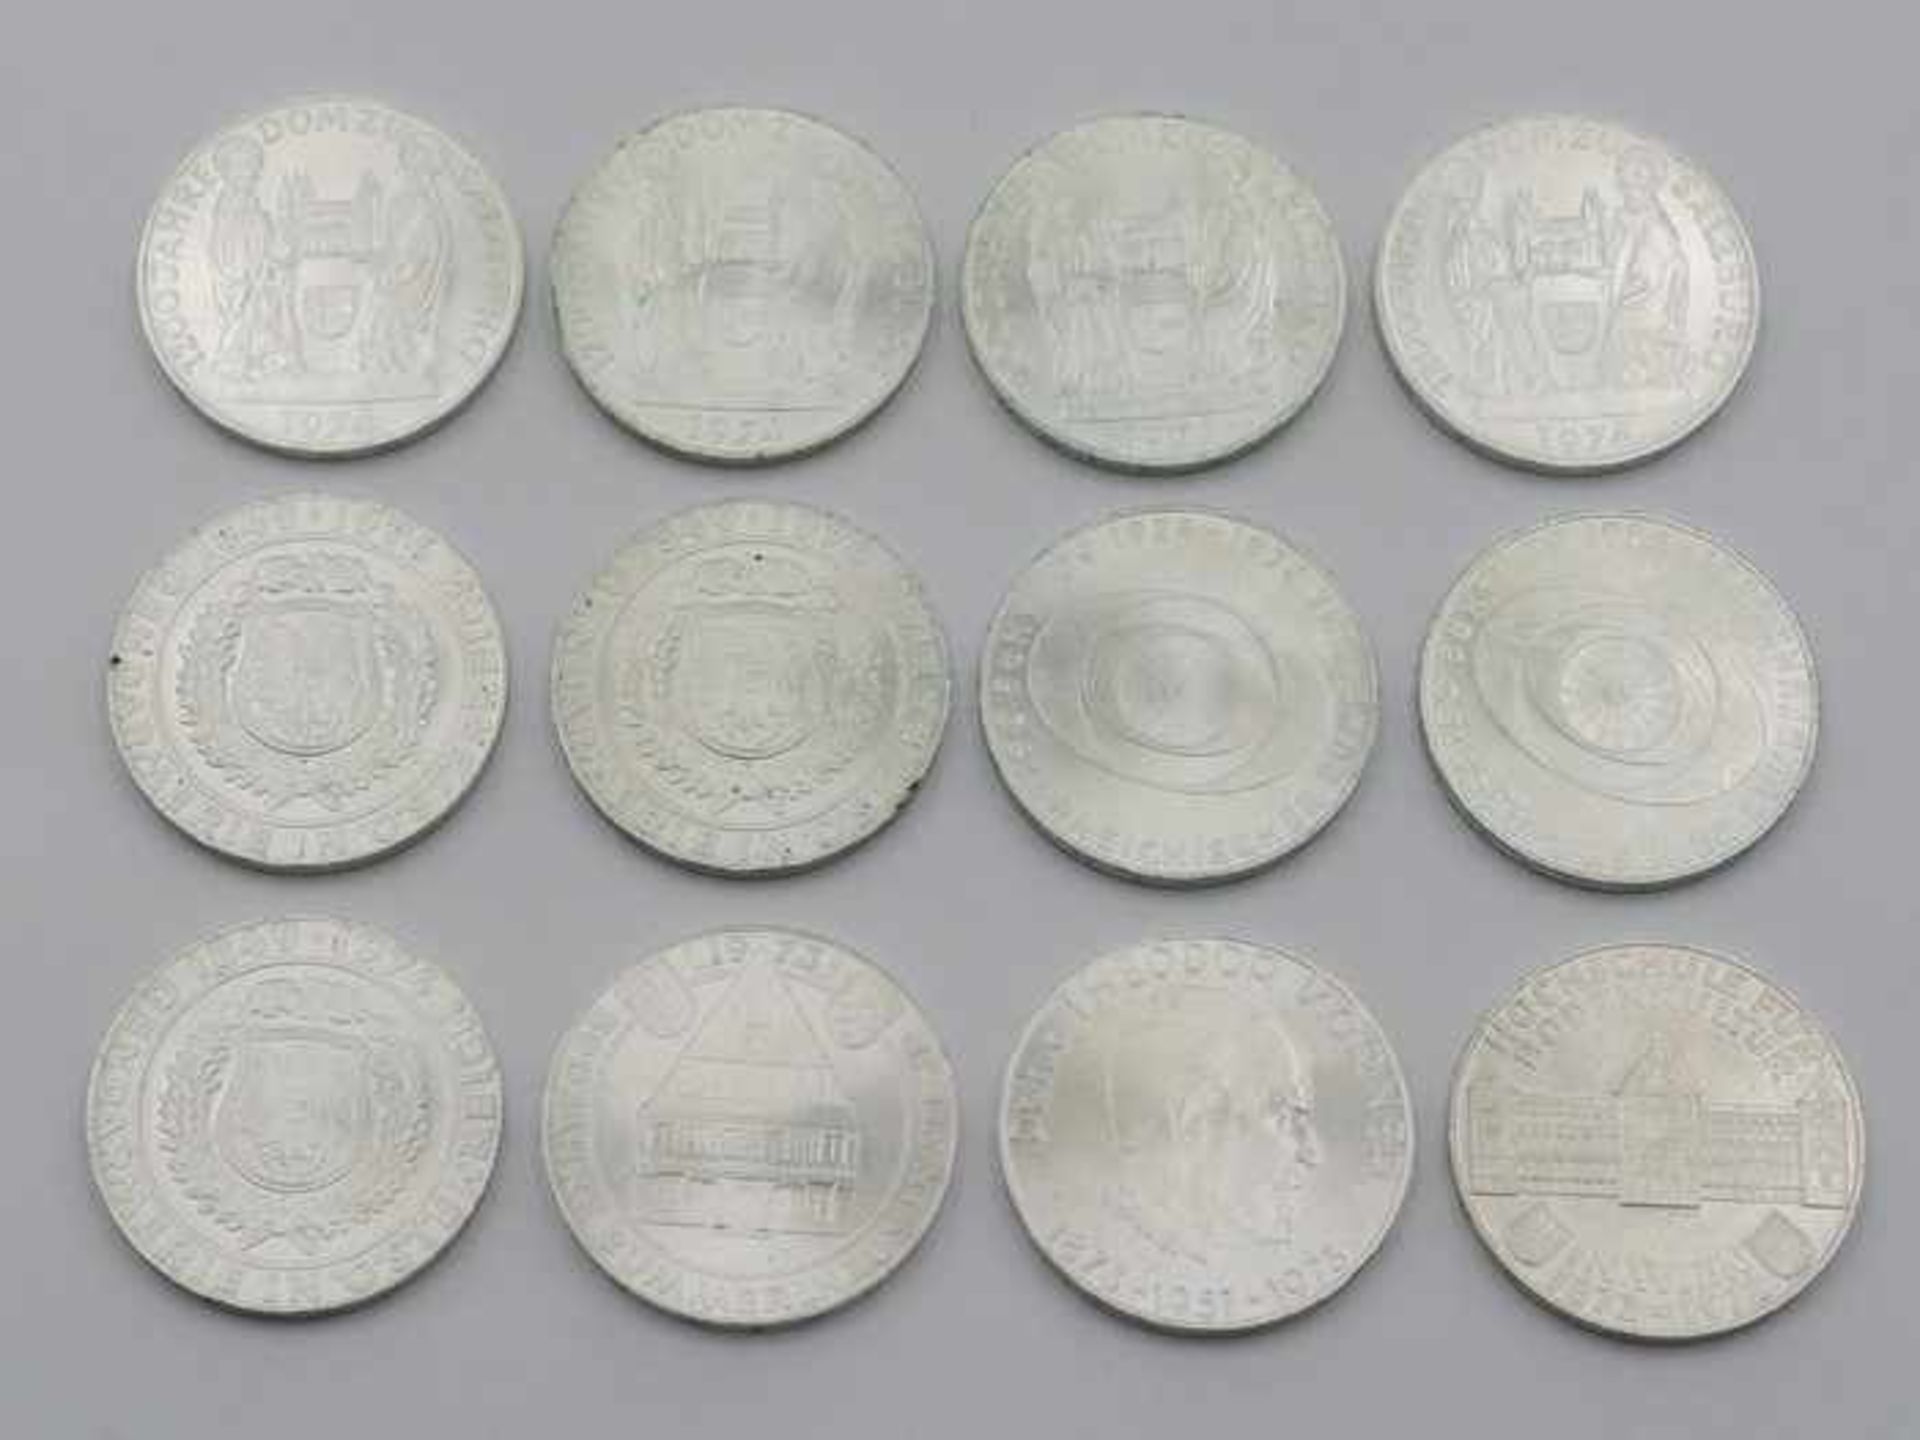 Münzen - ÖsterreichSi 900, Gedenkmünzen, 12 x 50 Schilling, Republik Österreich, av. versch. Motive,